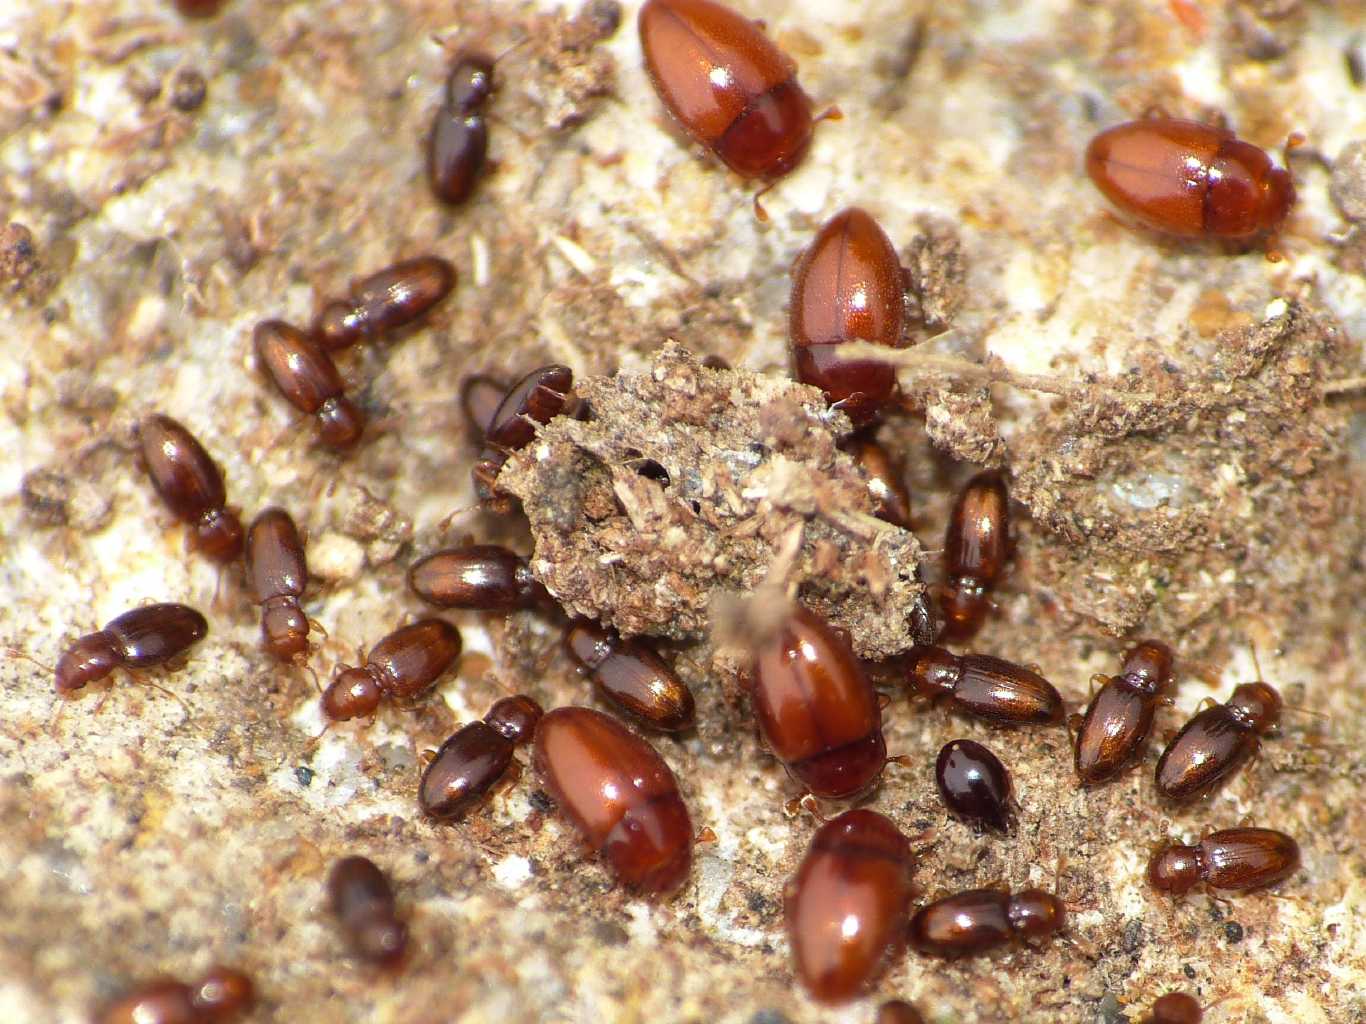 Microcoleotteri sotto le pietre